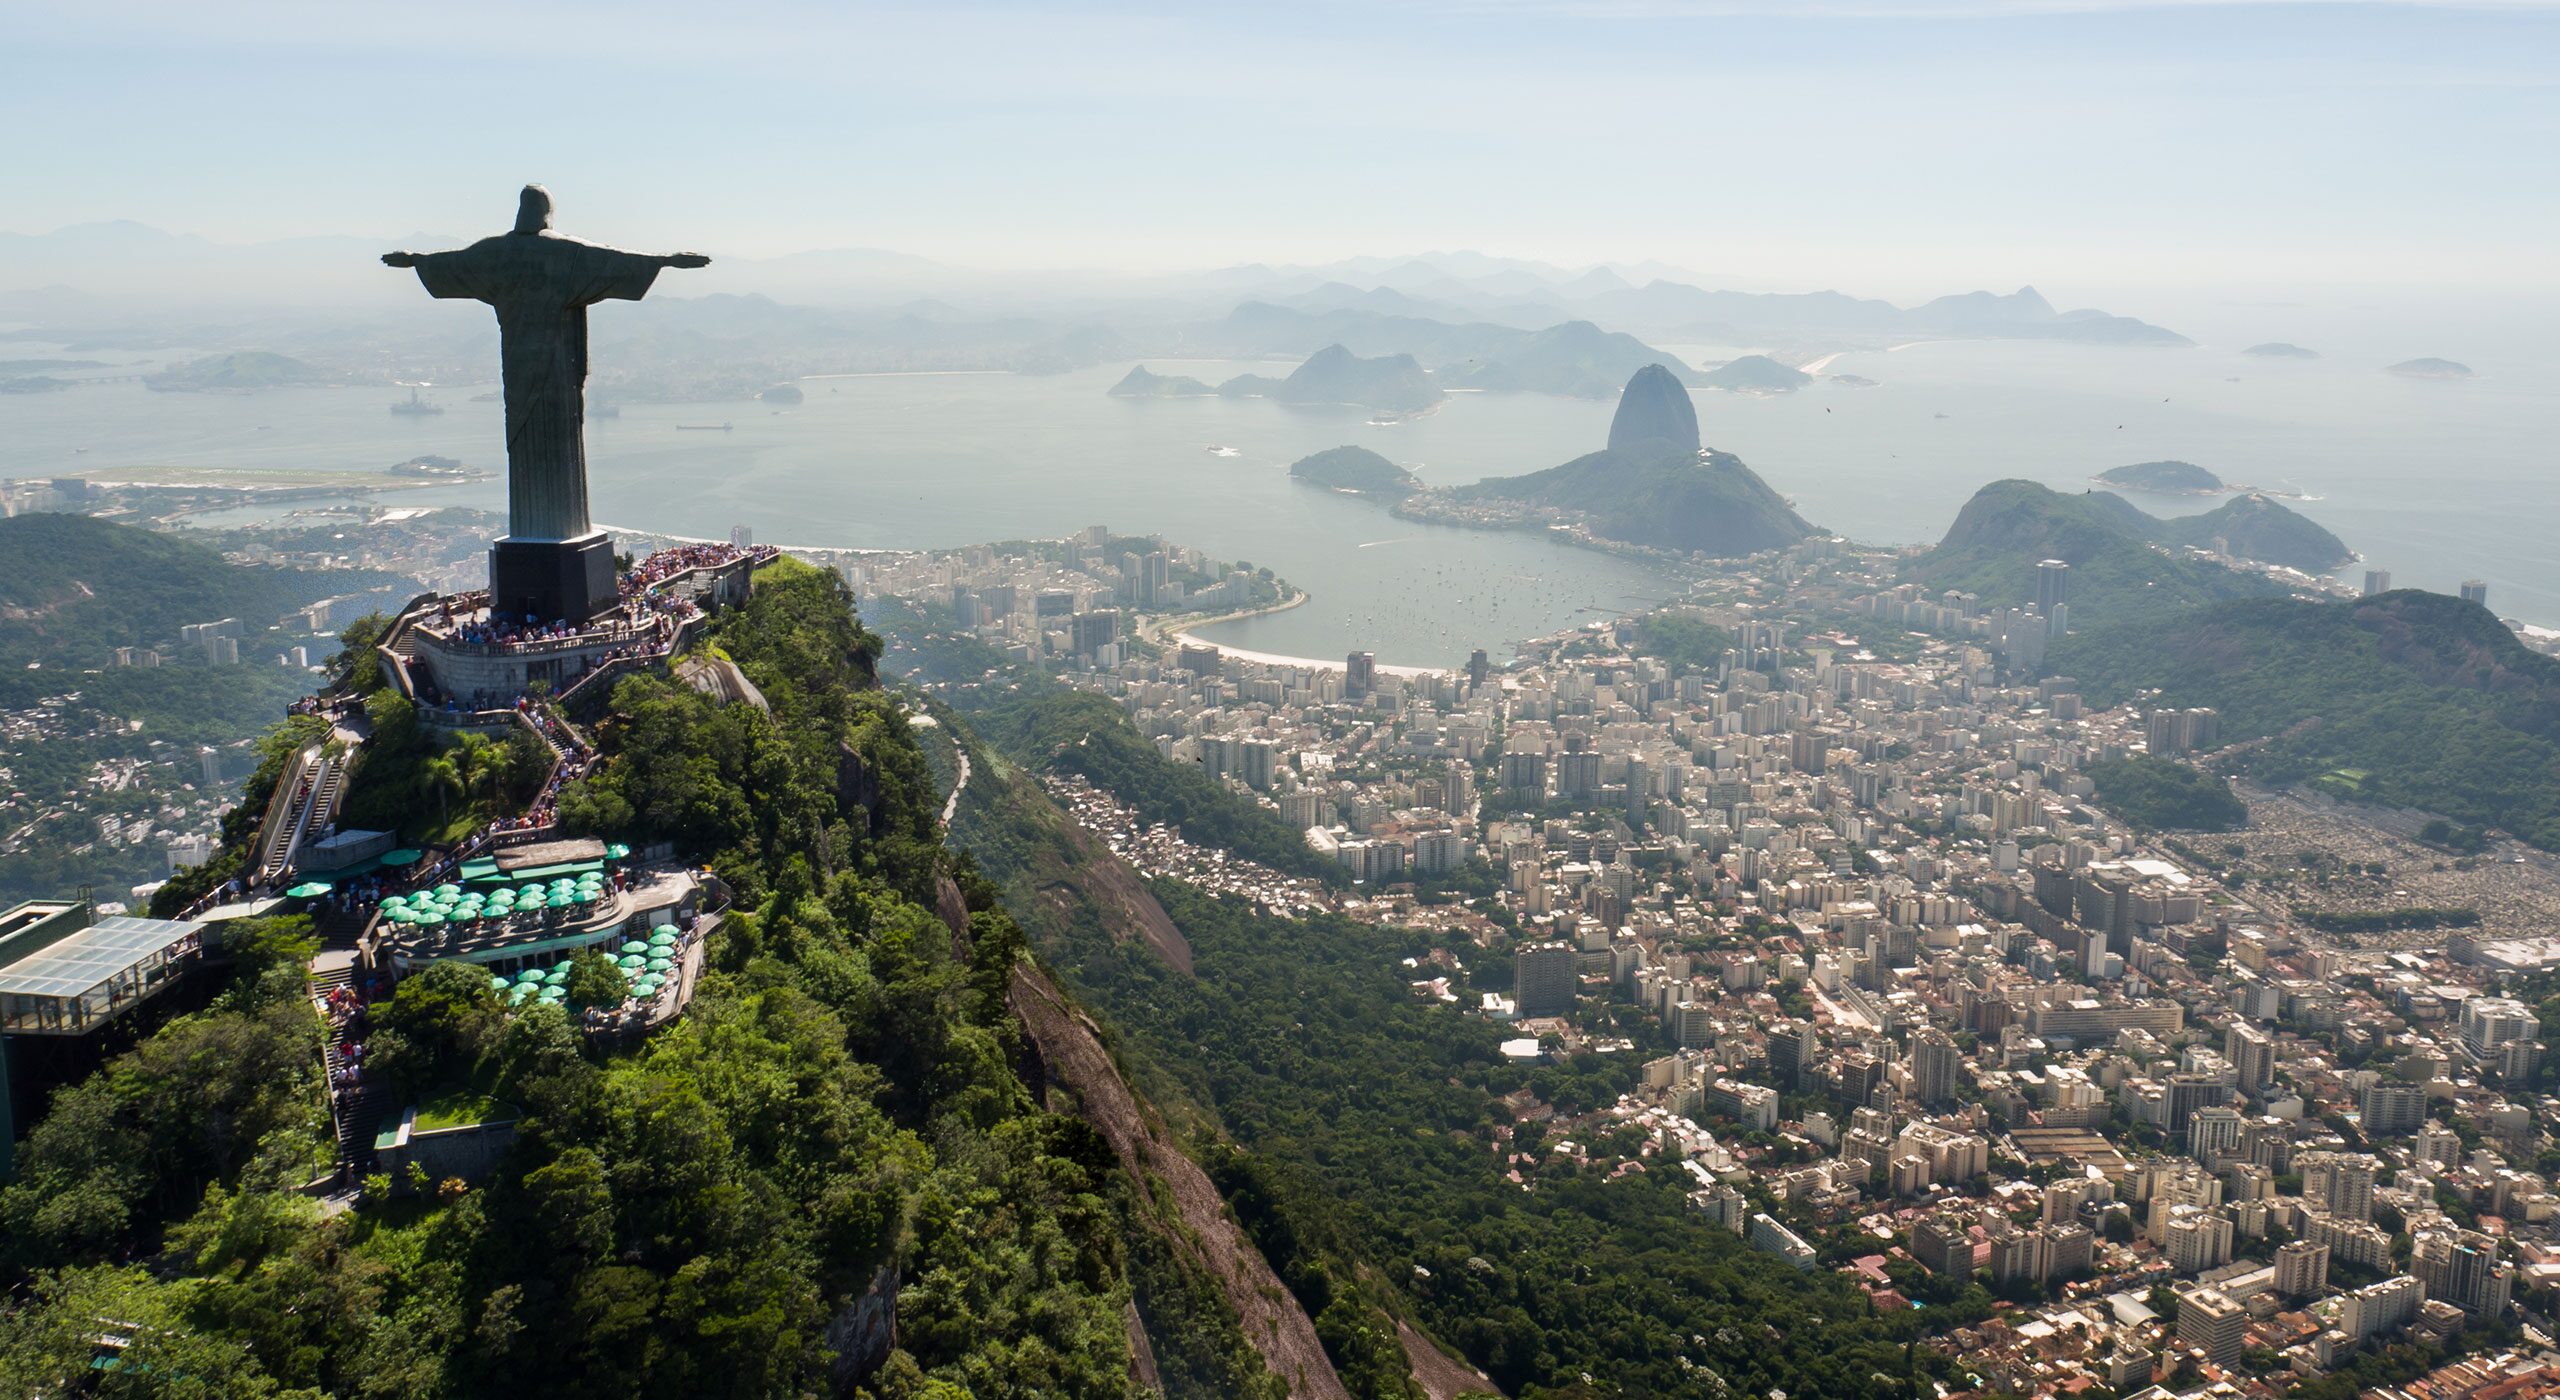 Rio de Janeiro, cruises to Brazil